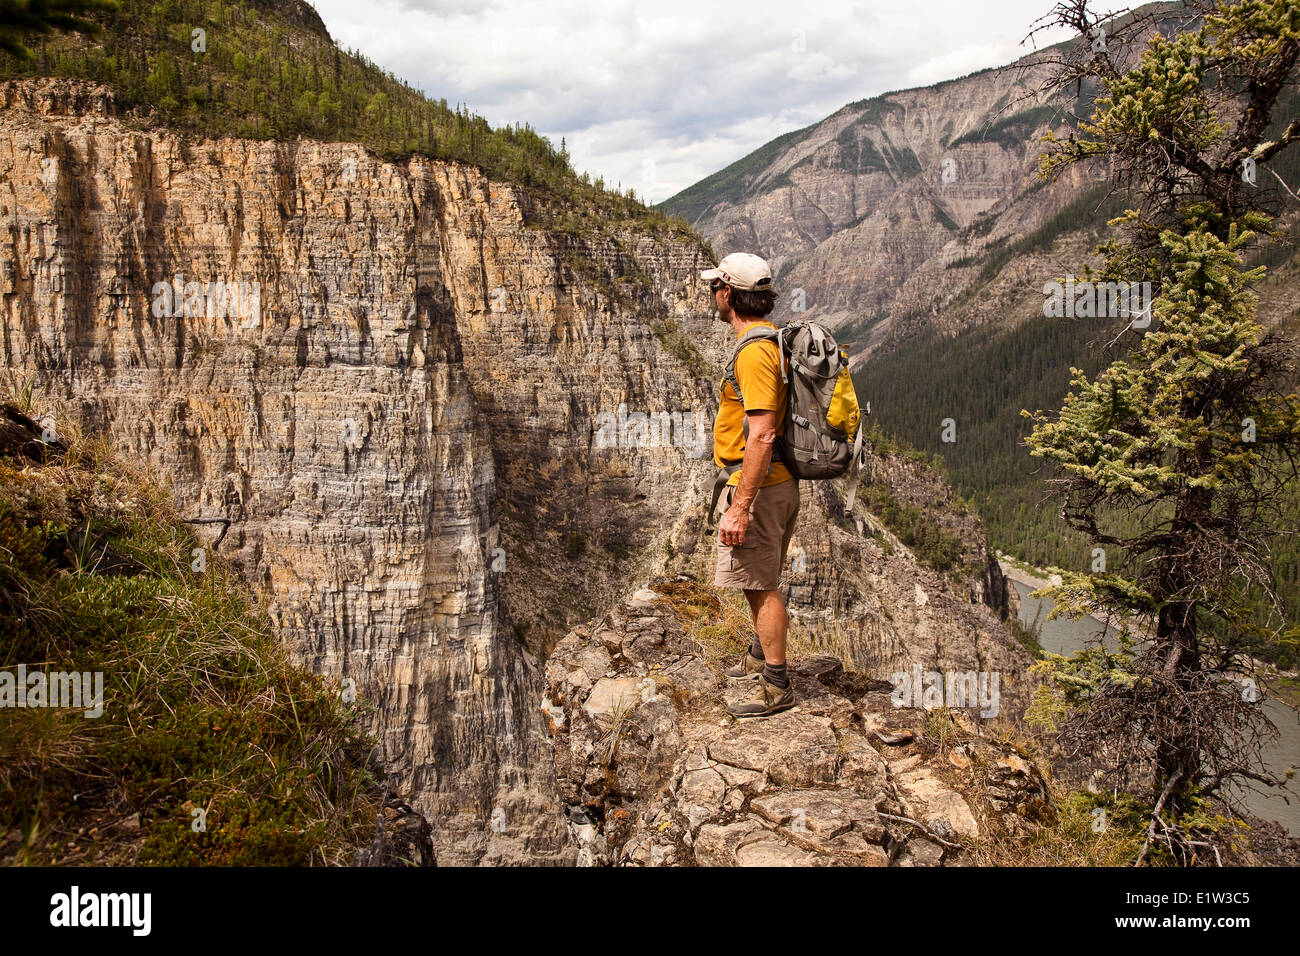 L'homme sur la falaise au-dessus de la rivière Nahanni, près de 'La Tribune' rock formation, la réserve de parc national Nahanni, Territoires du Nord-Ouest, préserver le Canada. Banque D'Images